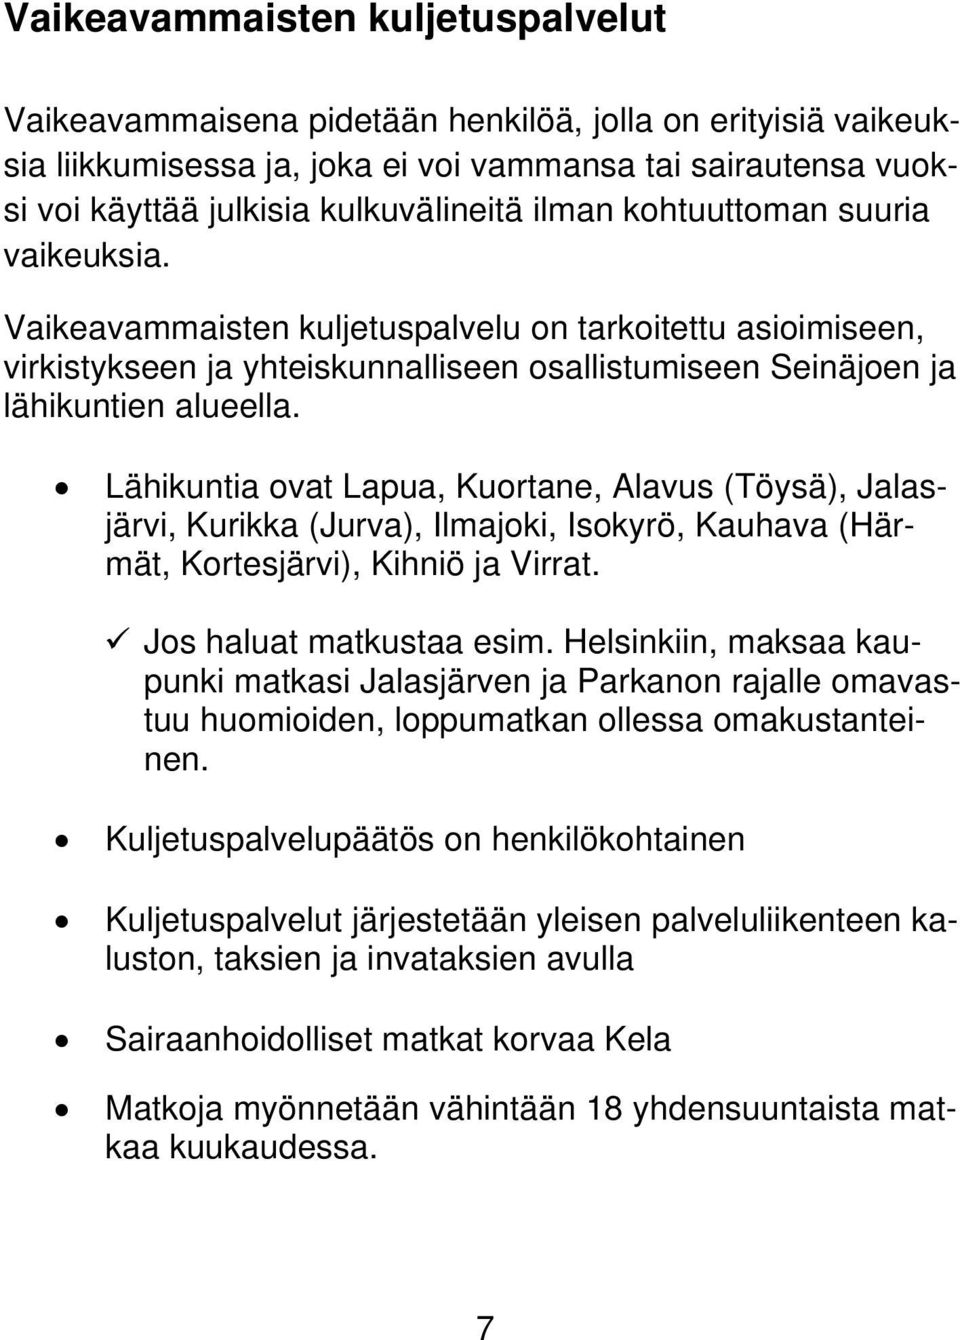 Lähikuntia ovat Lapua, Kuortane, Alavus (Töysä), Jalasjärvi, Kurikka (Jurva), Ilmajoki, Isokyrö, Kauhava (Härmät, Kortesjärvi), Kihniö ja Virrat. Jos haluat matkustaa esim.